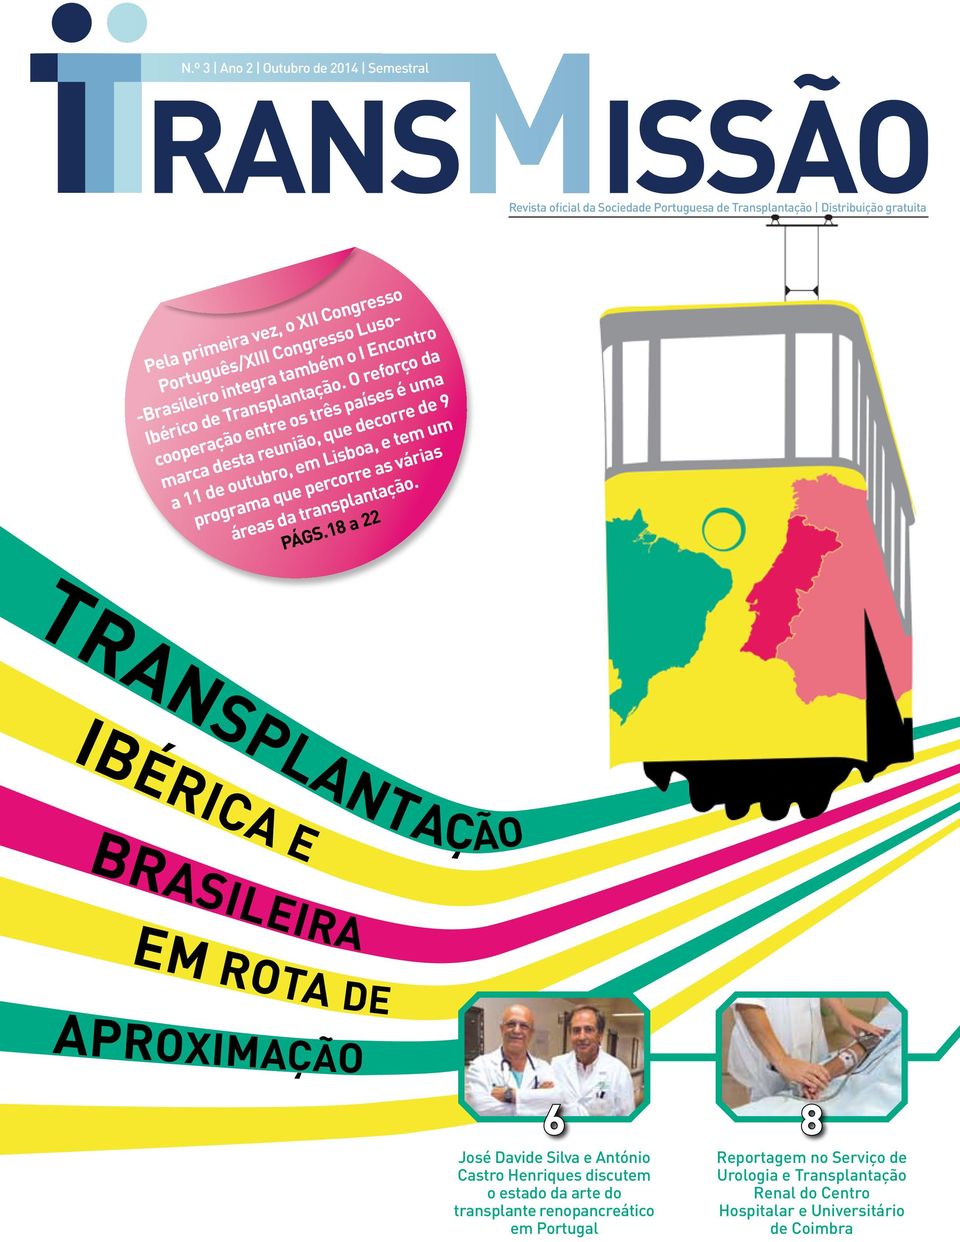 Brasileiro integra também o I Encontro Ibérico de Transplantação.